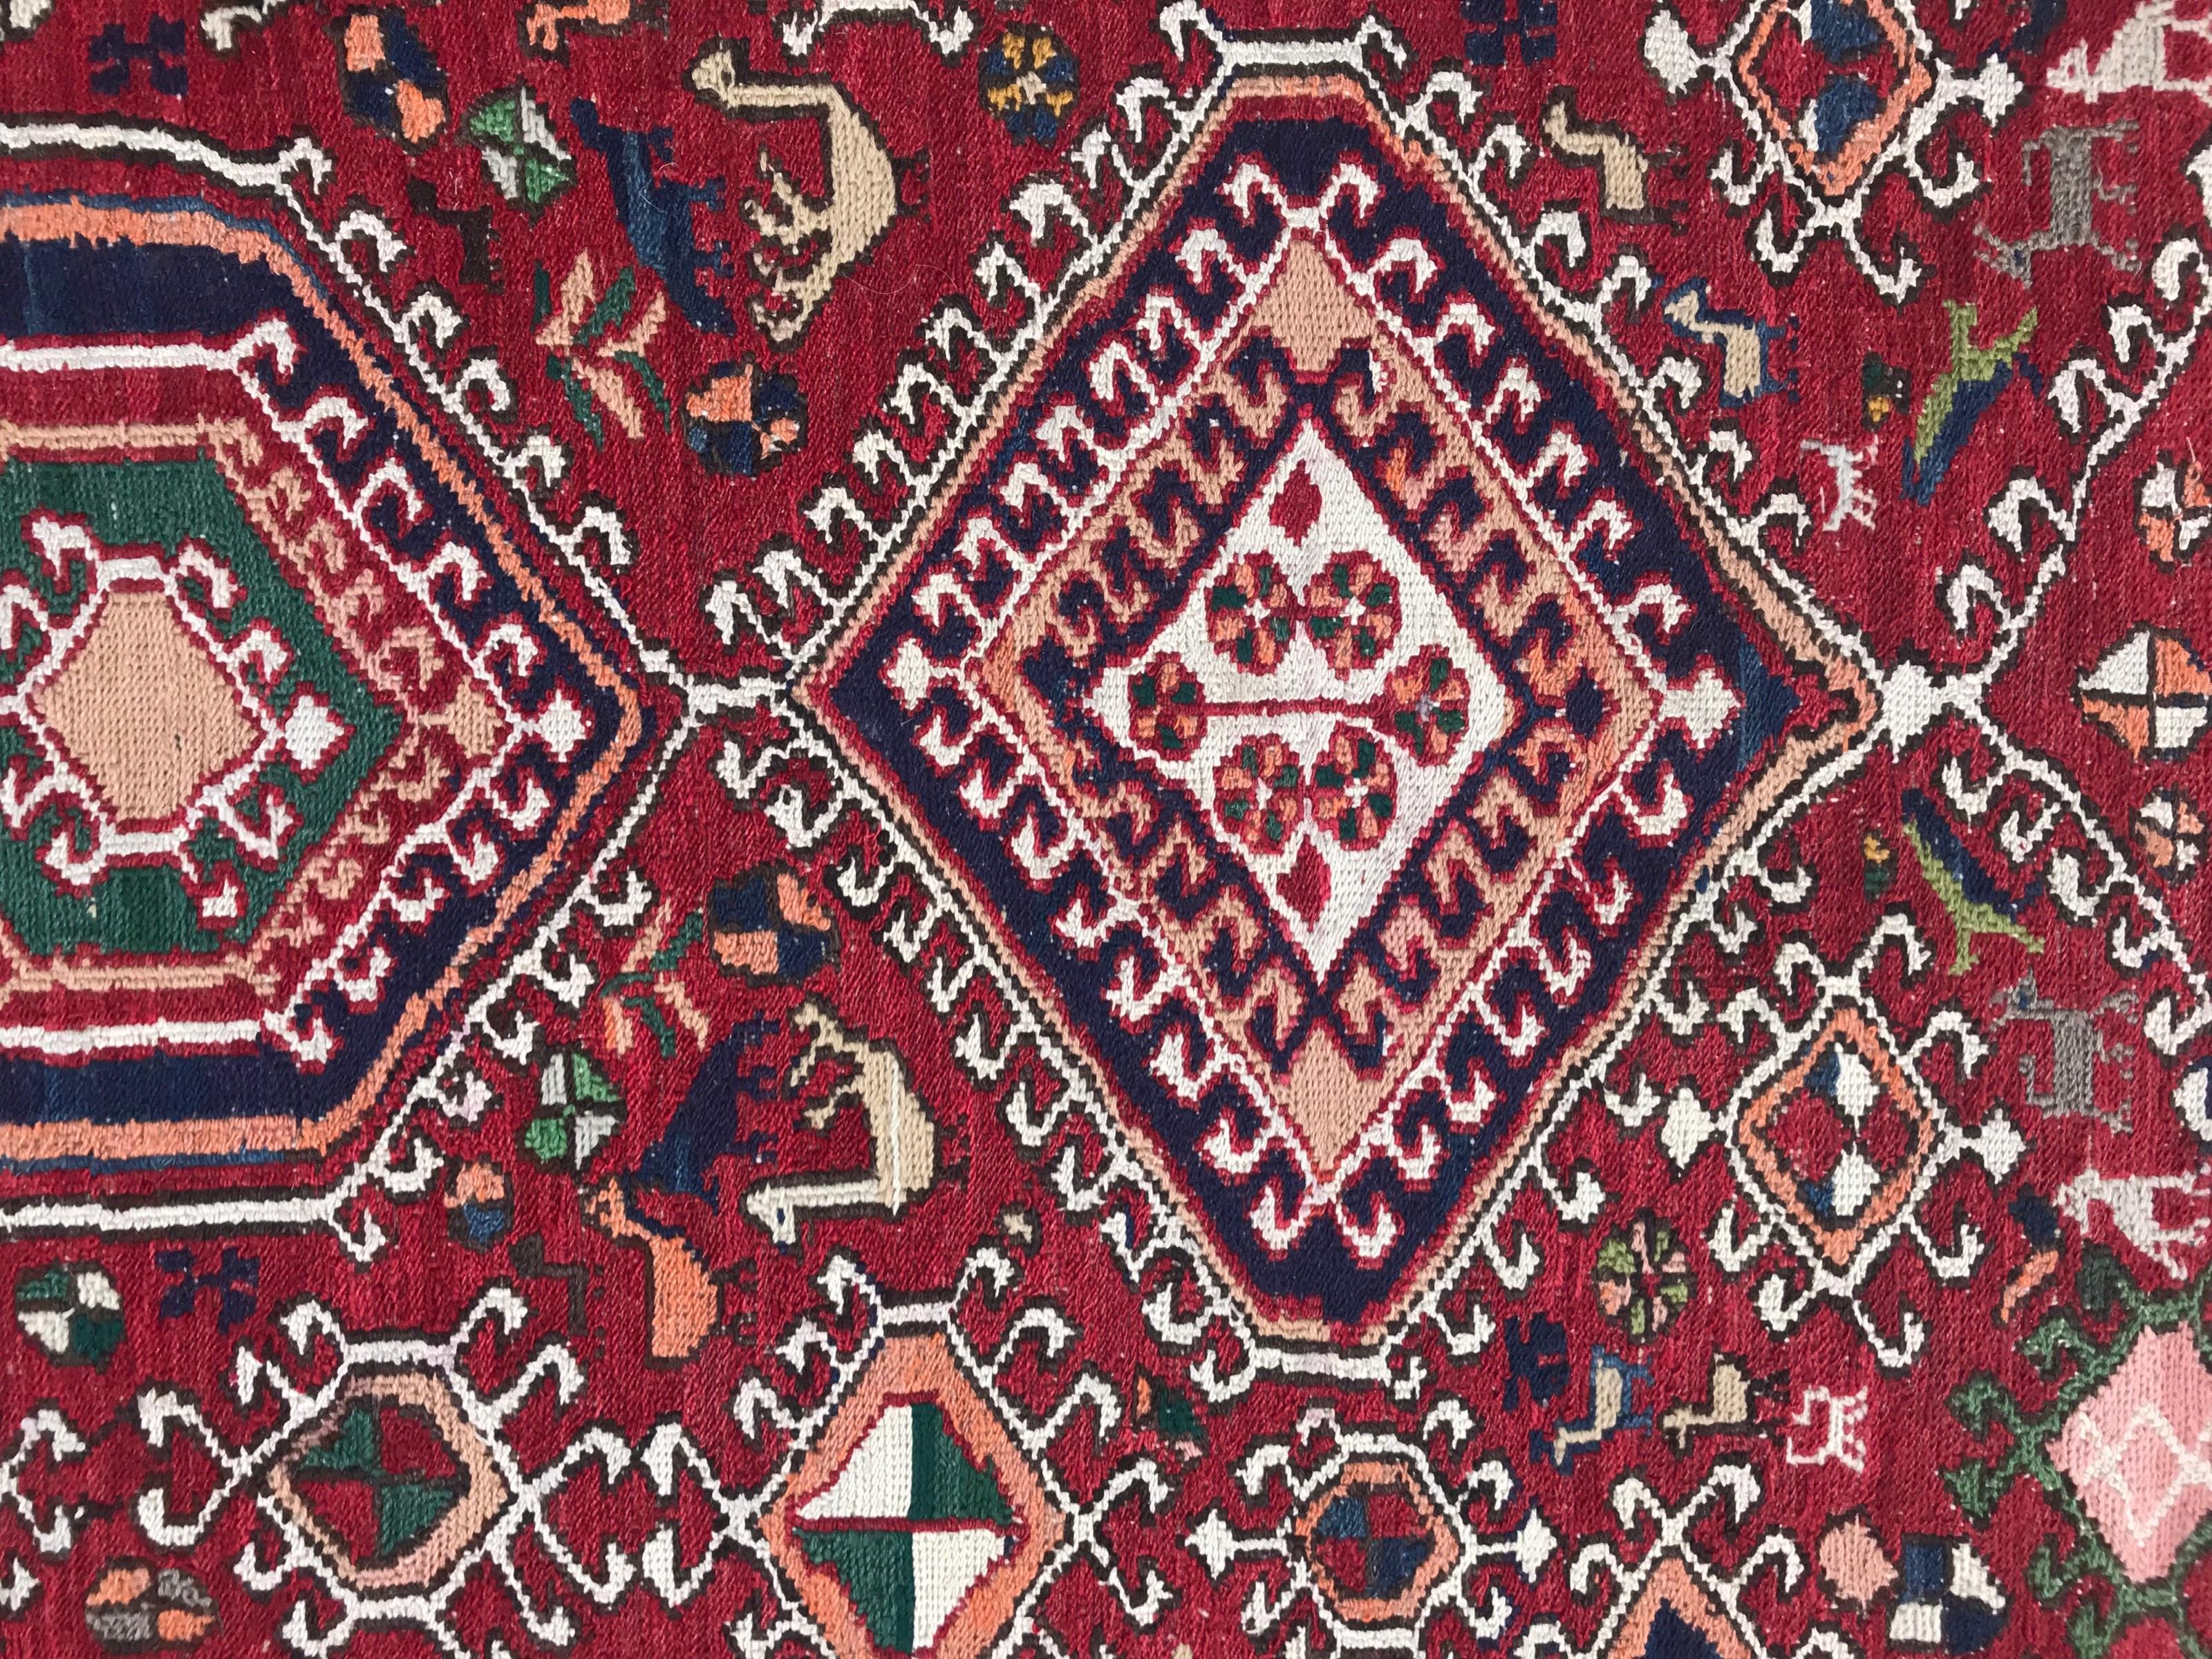 Découvrez l'élégance de notre tapis plat Shahsavand d'Azerbaïdjan de la fin du XXe siècle. Plongez dans son captivant design géométrique tribal caucasien, avec ses animaux stylisés et ses couleurs vives - un chef-d'œuvre tissé et brodé à la main